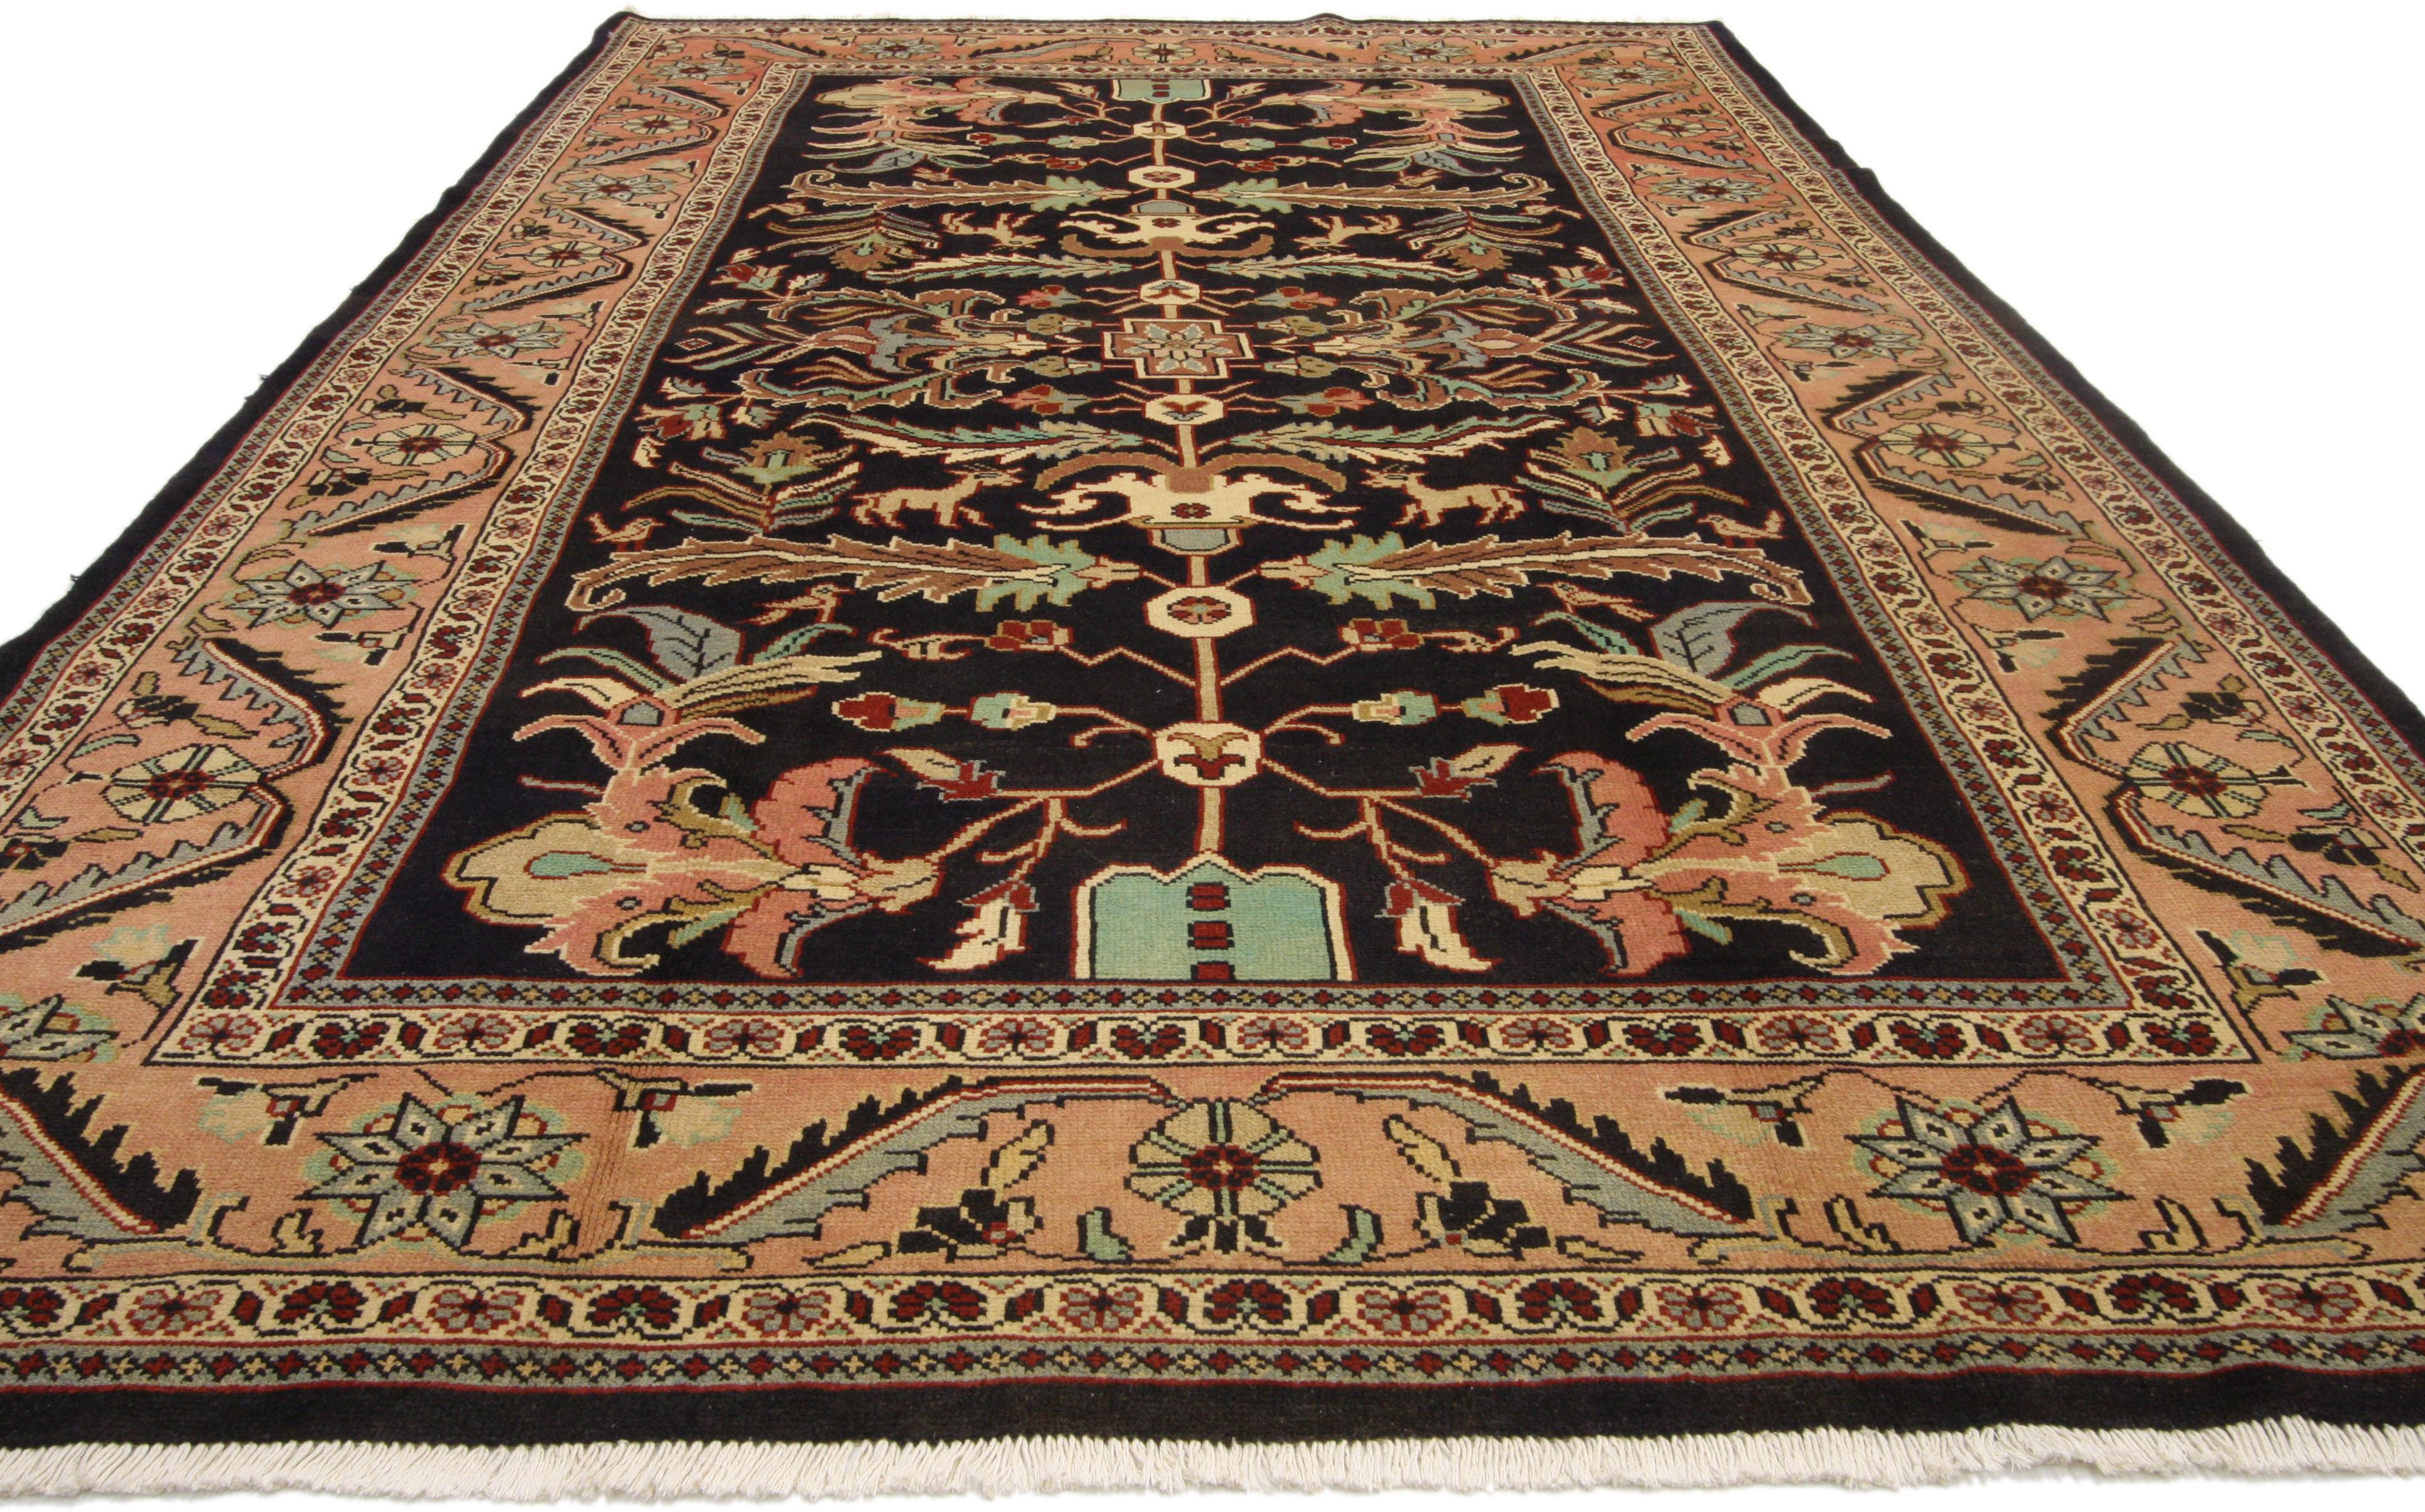 william morris rugs reproductions